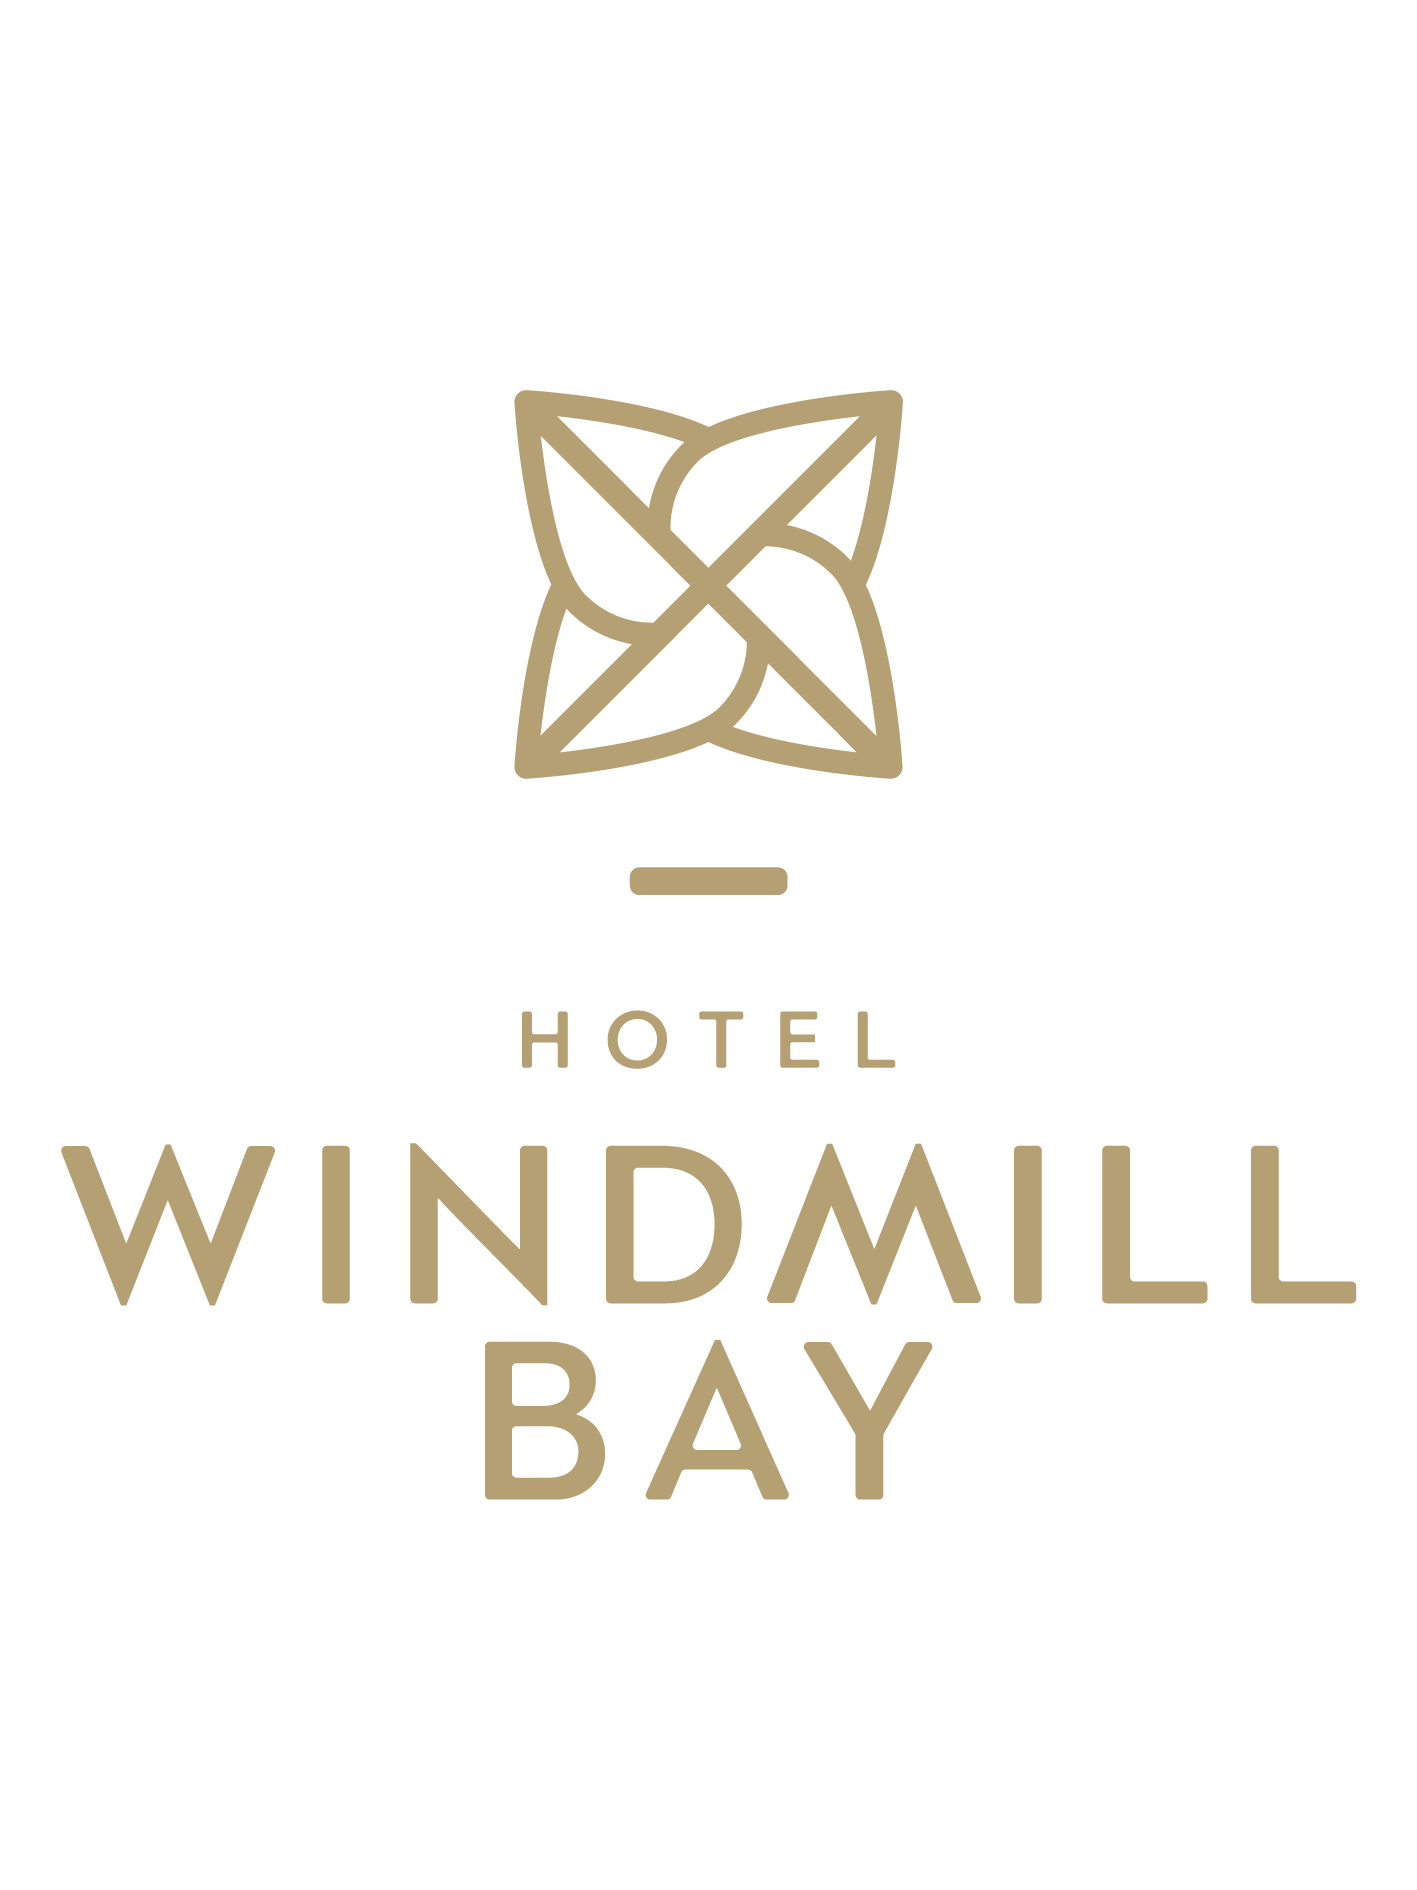 Windmill Bay